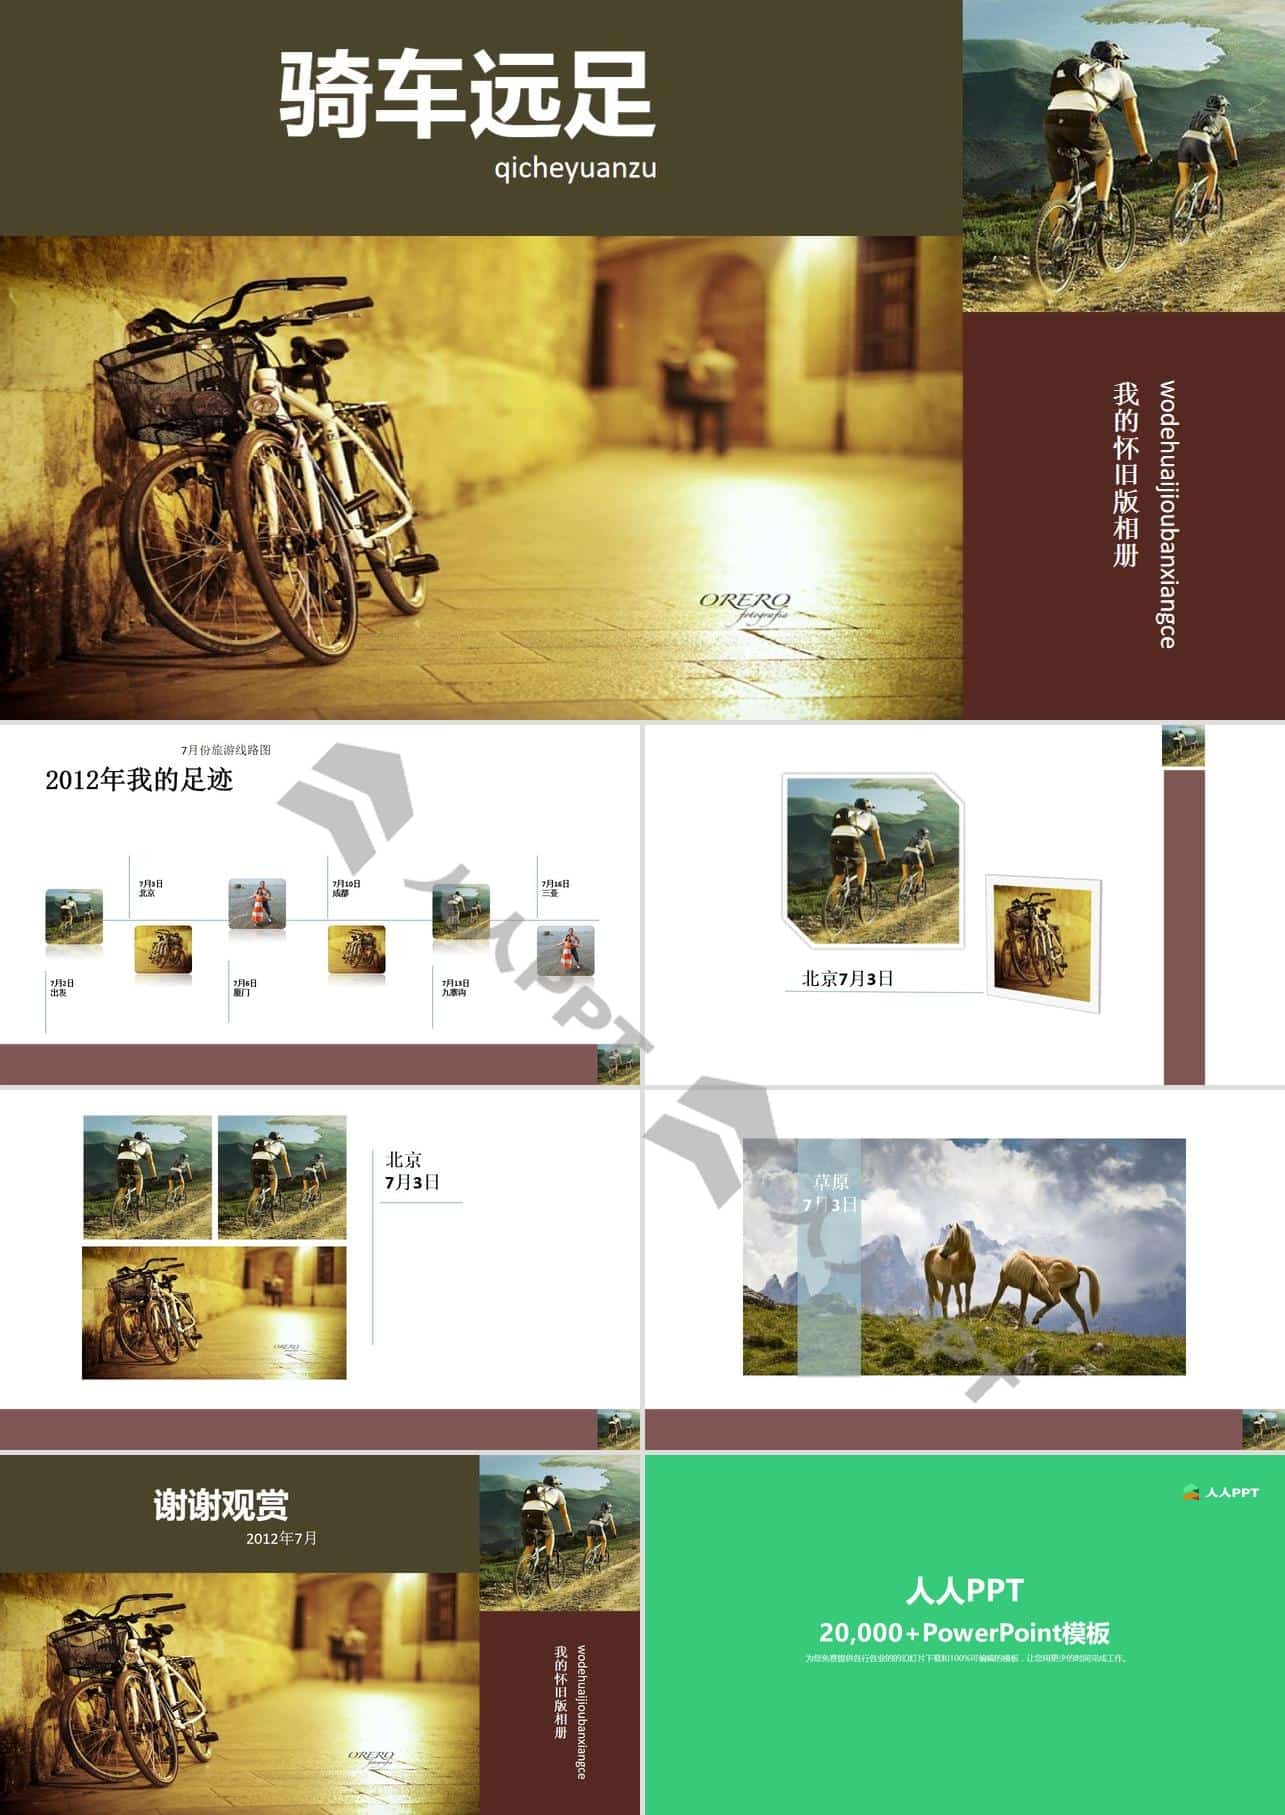 骑车骑友旅游相册幻灯片模板长图